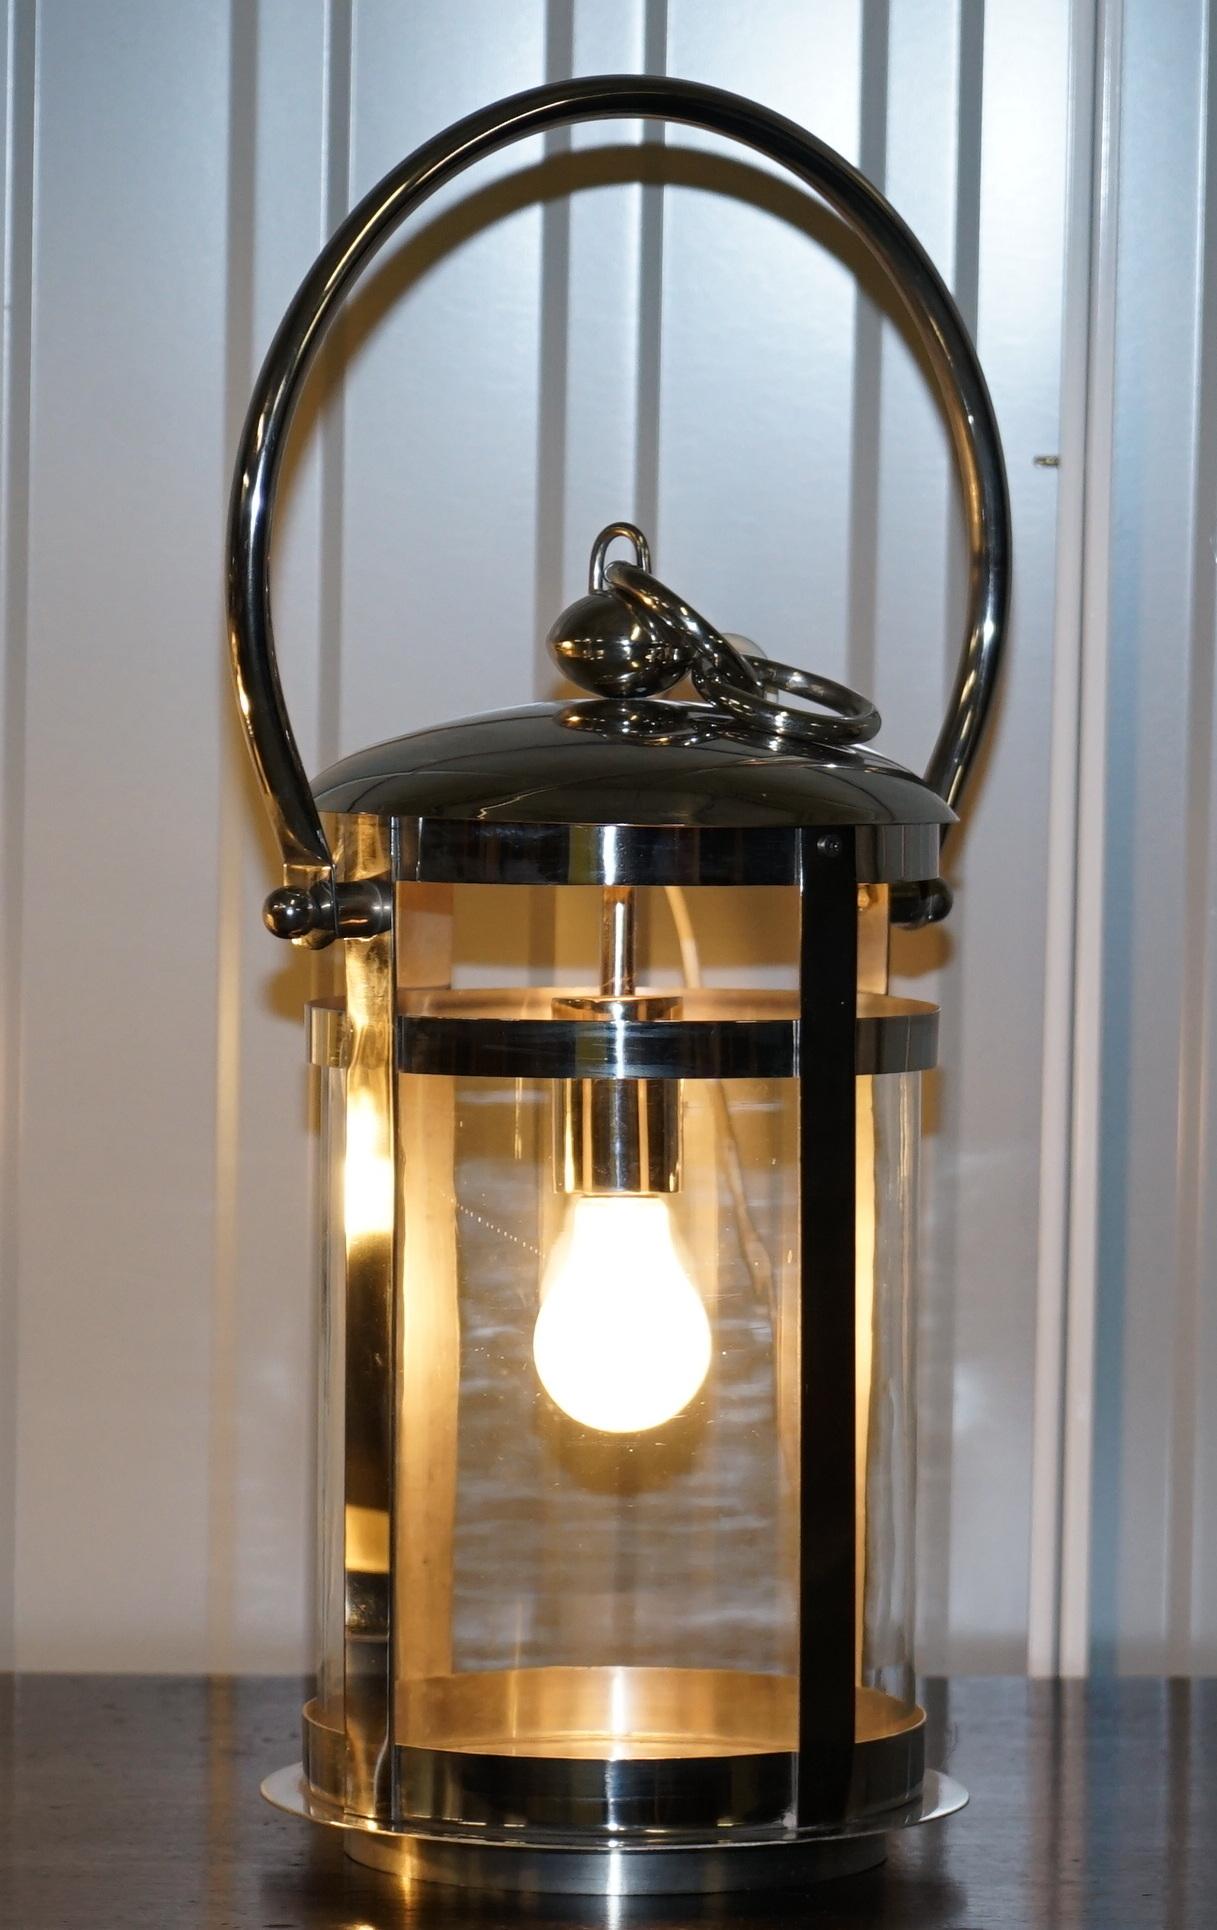 Nous sommes ravis d'offrir à la vente cette superbe paire de lanternes portables chromées avec deux abat-jours cylindriques en verre.

Il s'agit d'une paire de lanternes de qualité exceptionnelle et très haut de gamme fabriquée par les génies de